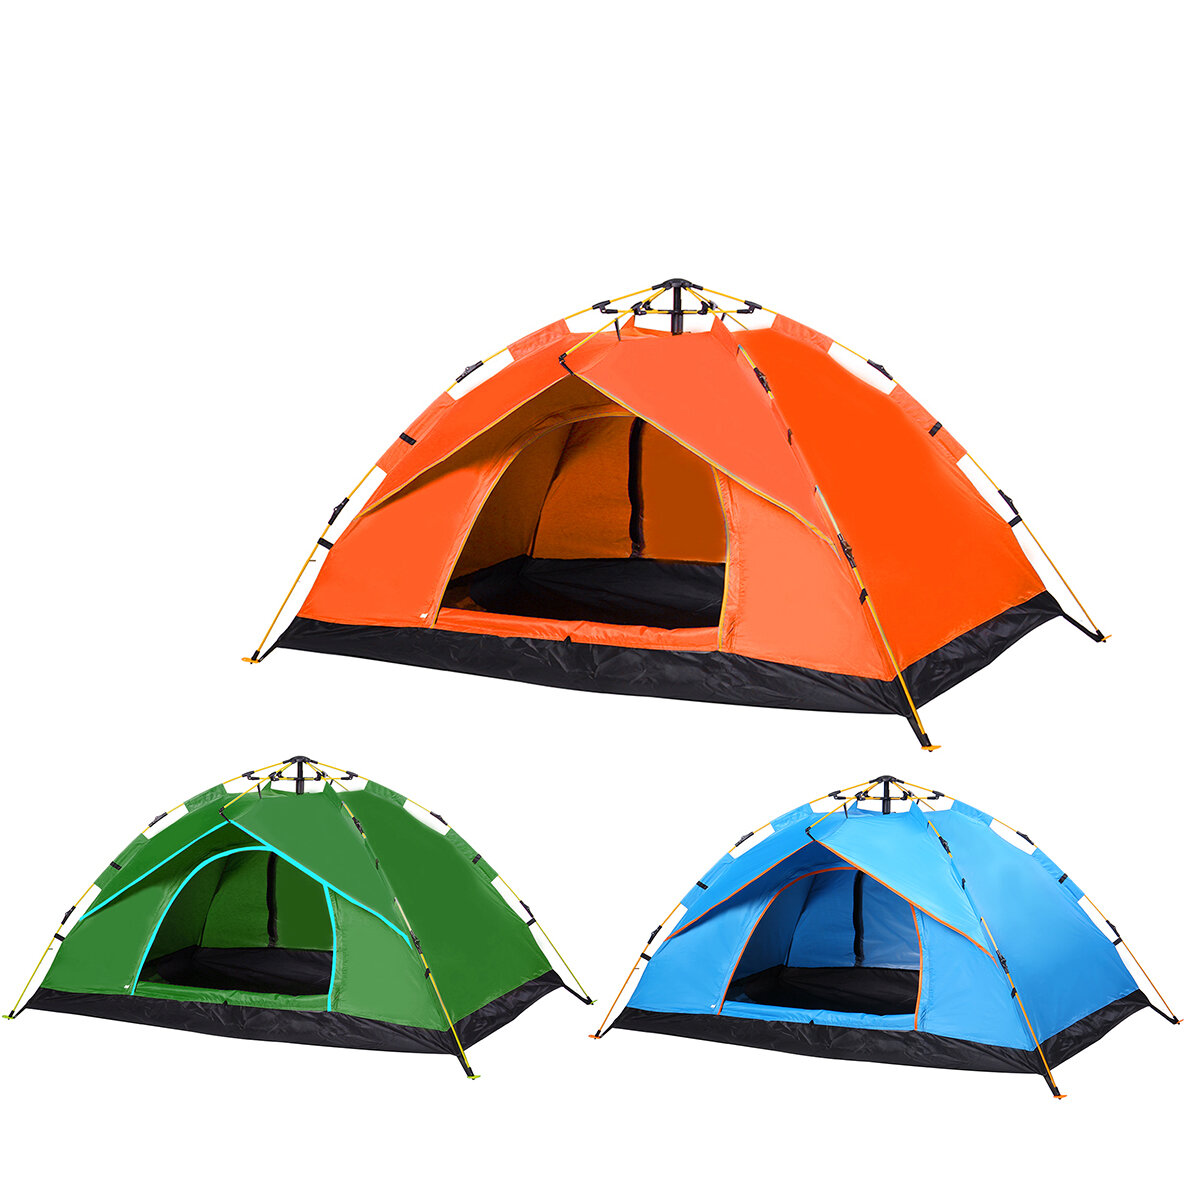 Einlagiges vollautomatisches Campingzelt für 1-2 Personen, faltbar, dick und wasserdicht für Outdoor-Aktivitäten und Wanderungen.